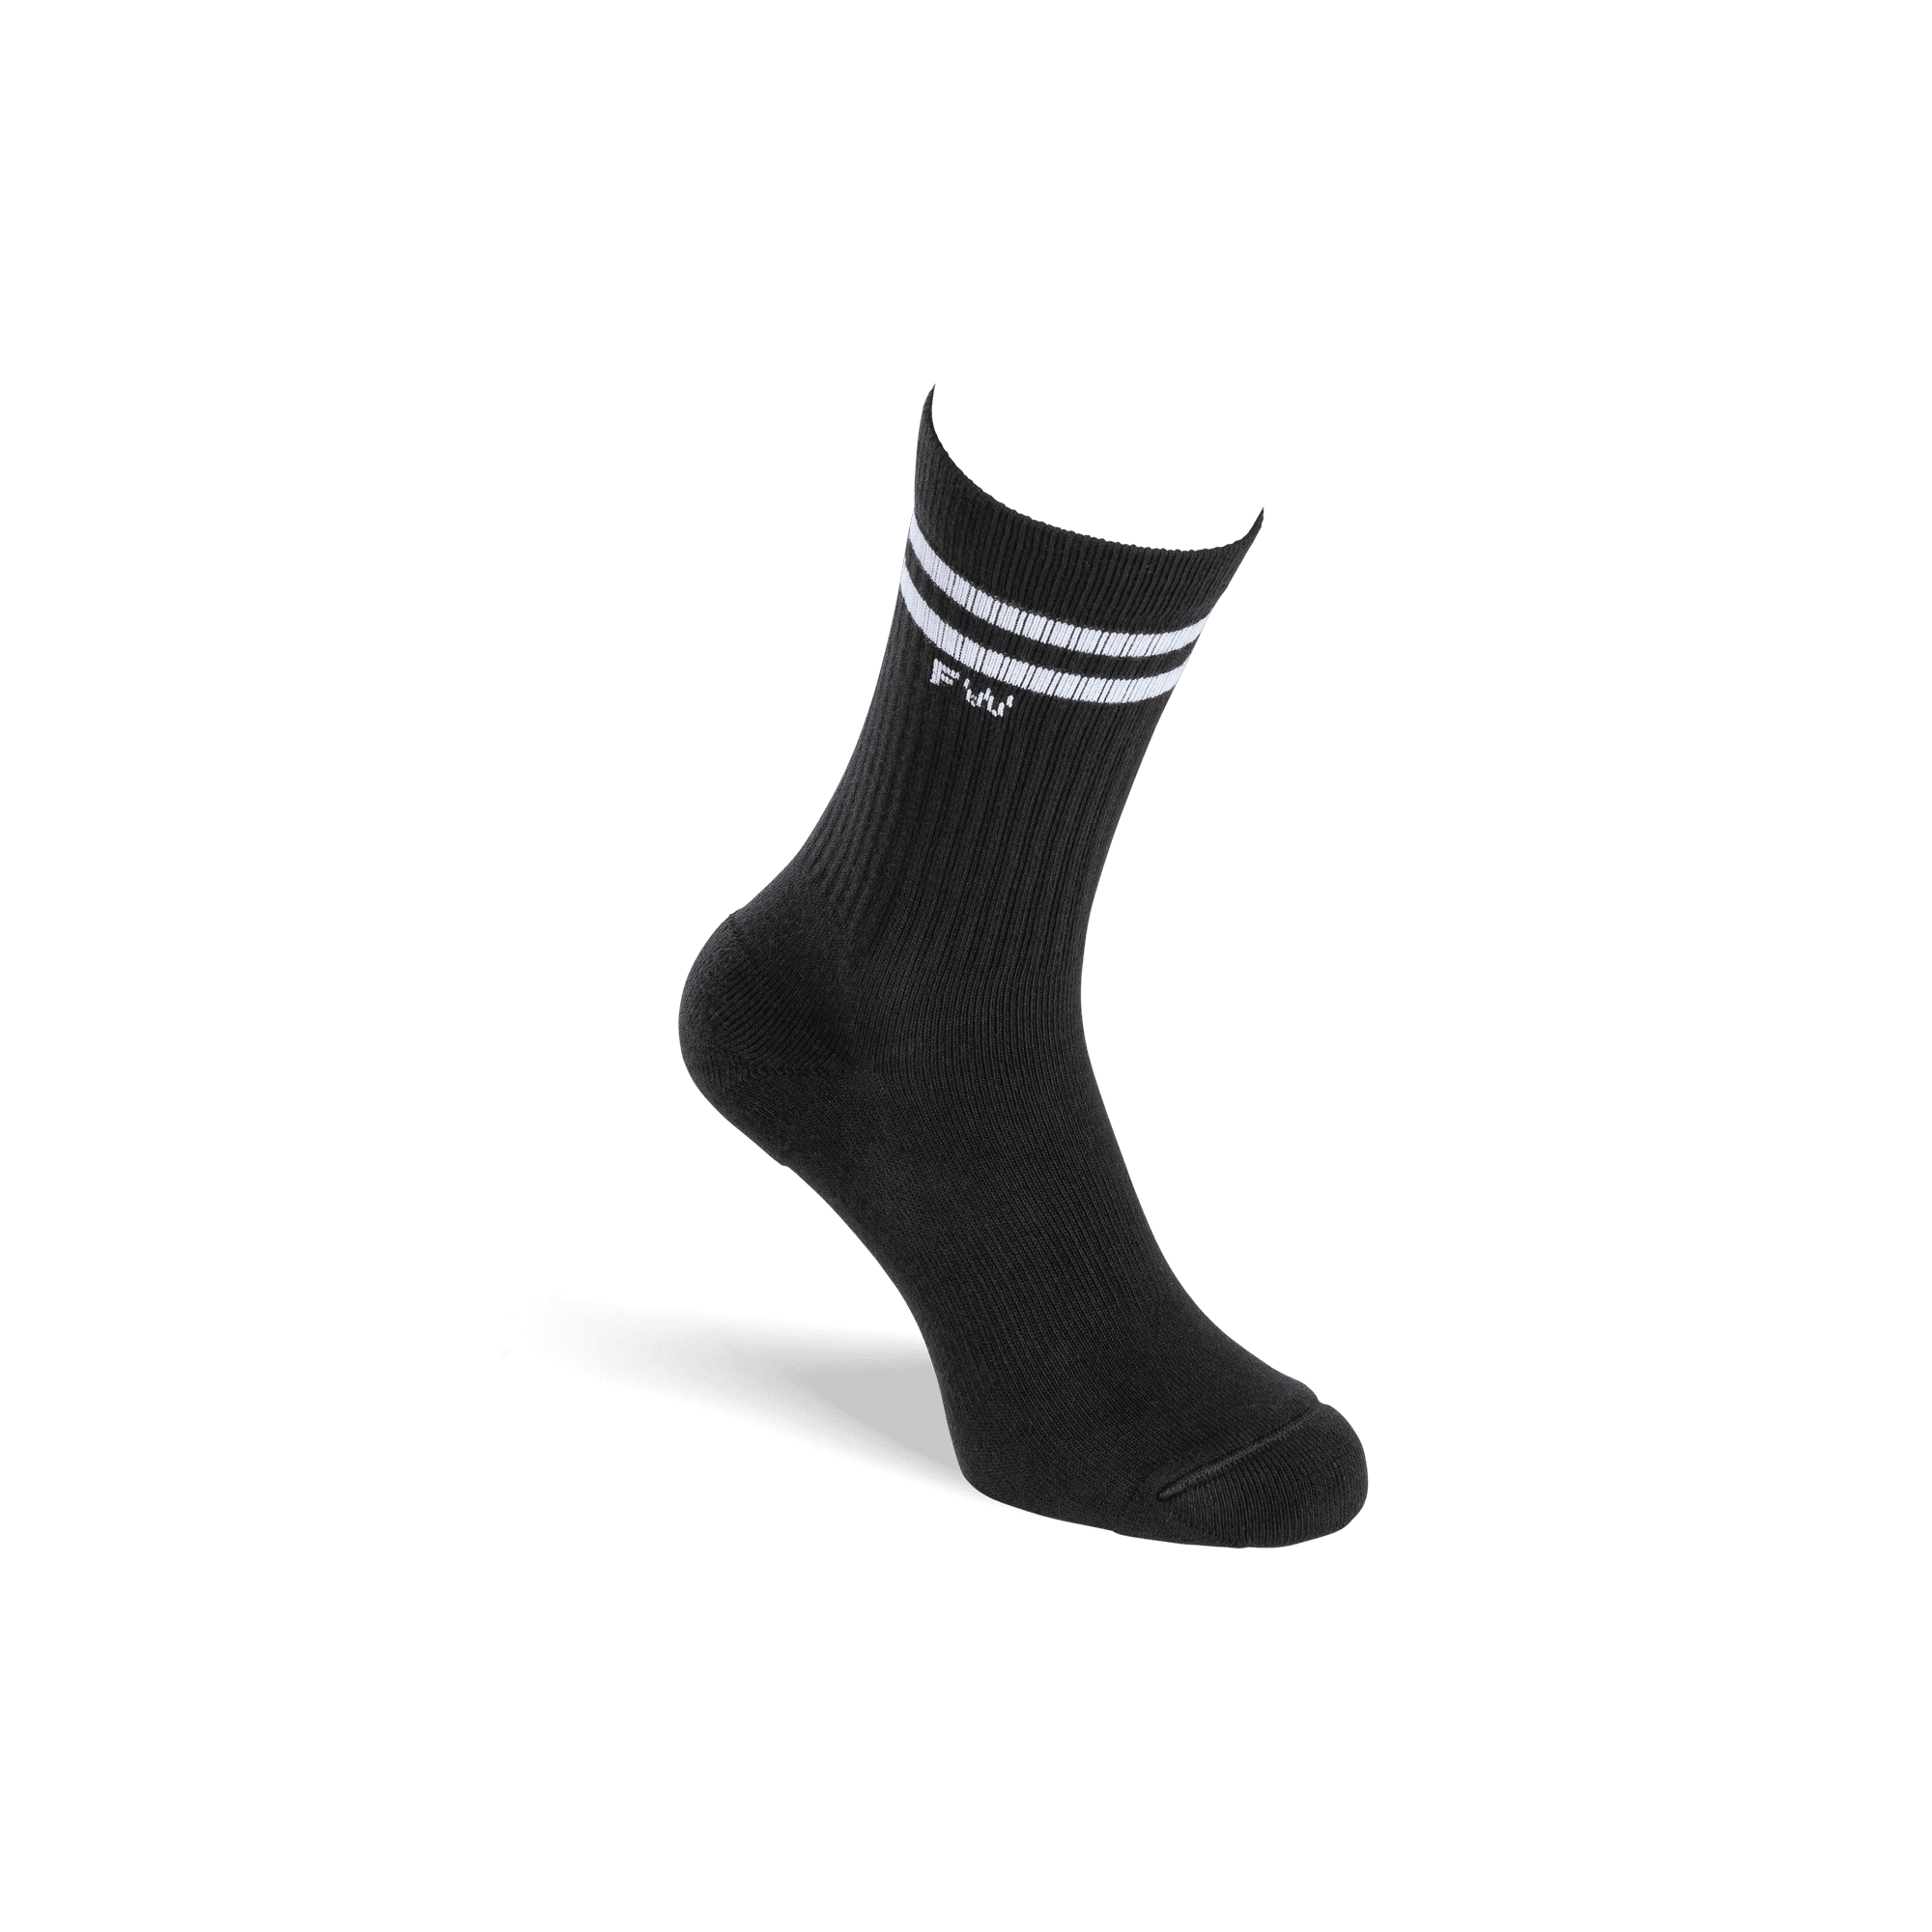 RETRO PADEL SOCKS - Brilliant Black